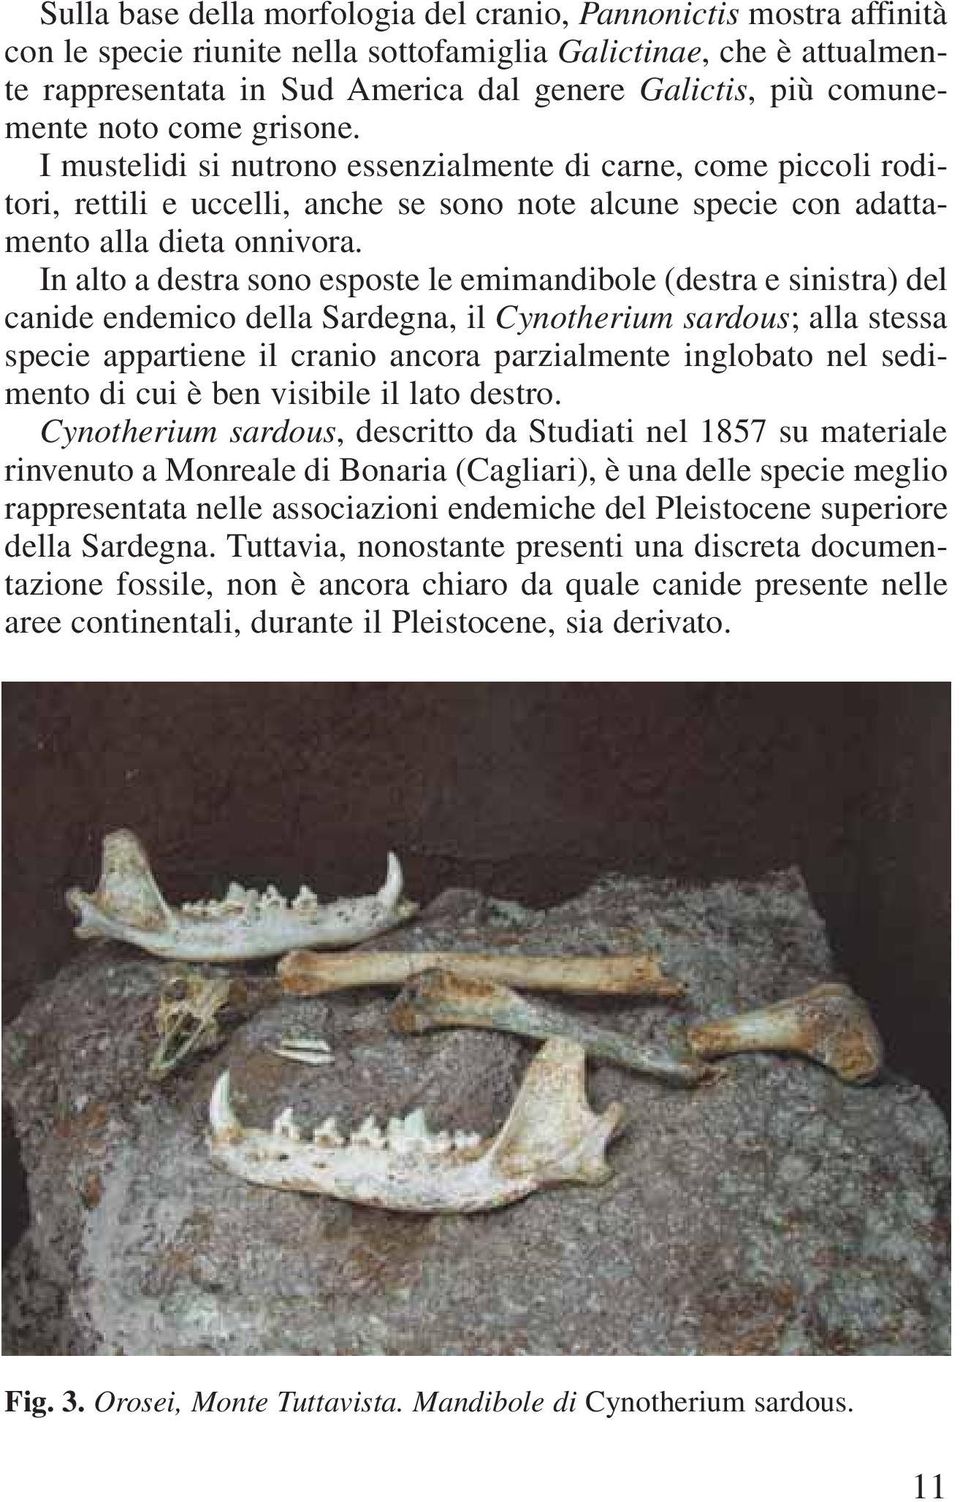 In alto a destra sono esposte le emimandibole (destra e sinistra) del canide endemico della Sardegna, il Cynotherium sardous; alla stessa specie appartiene il cranio ancora parzialmente inglobato nel